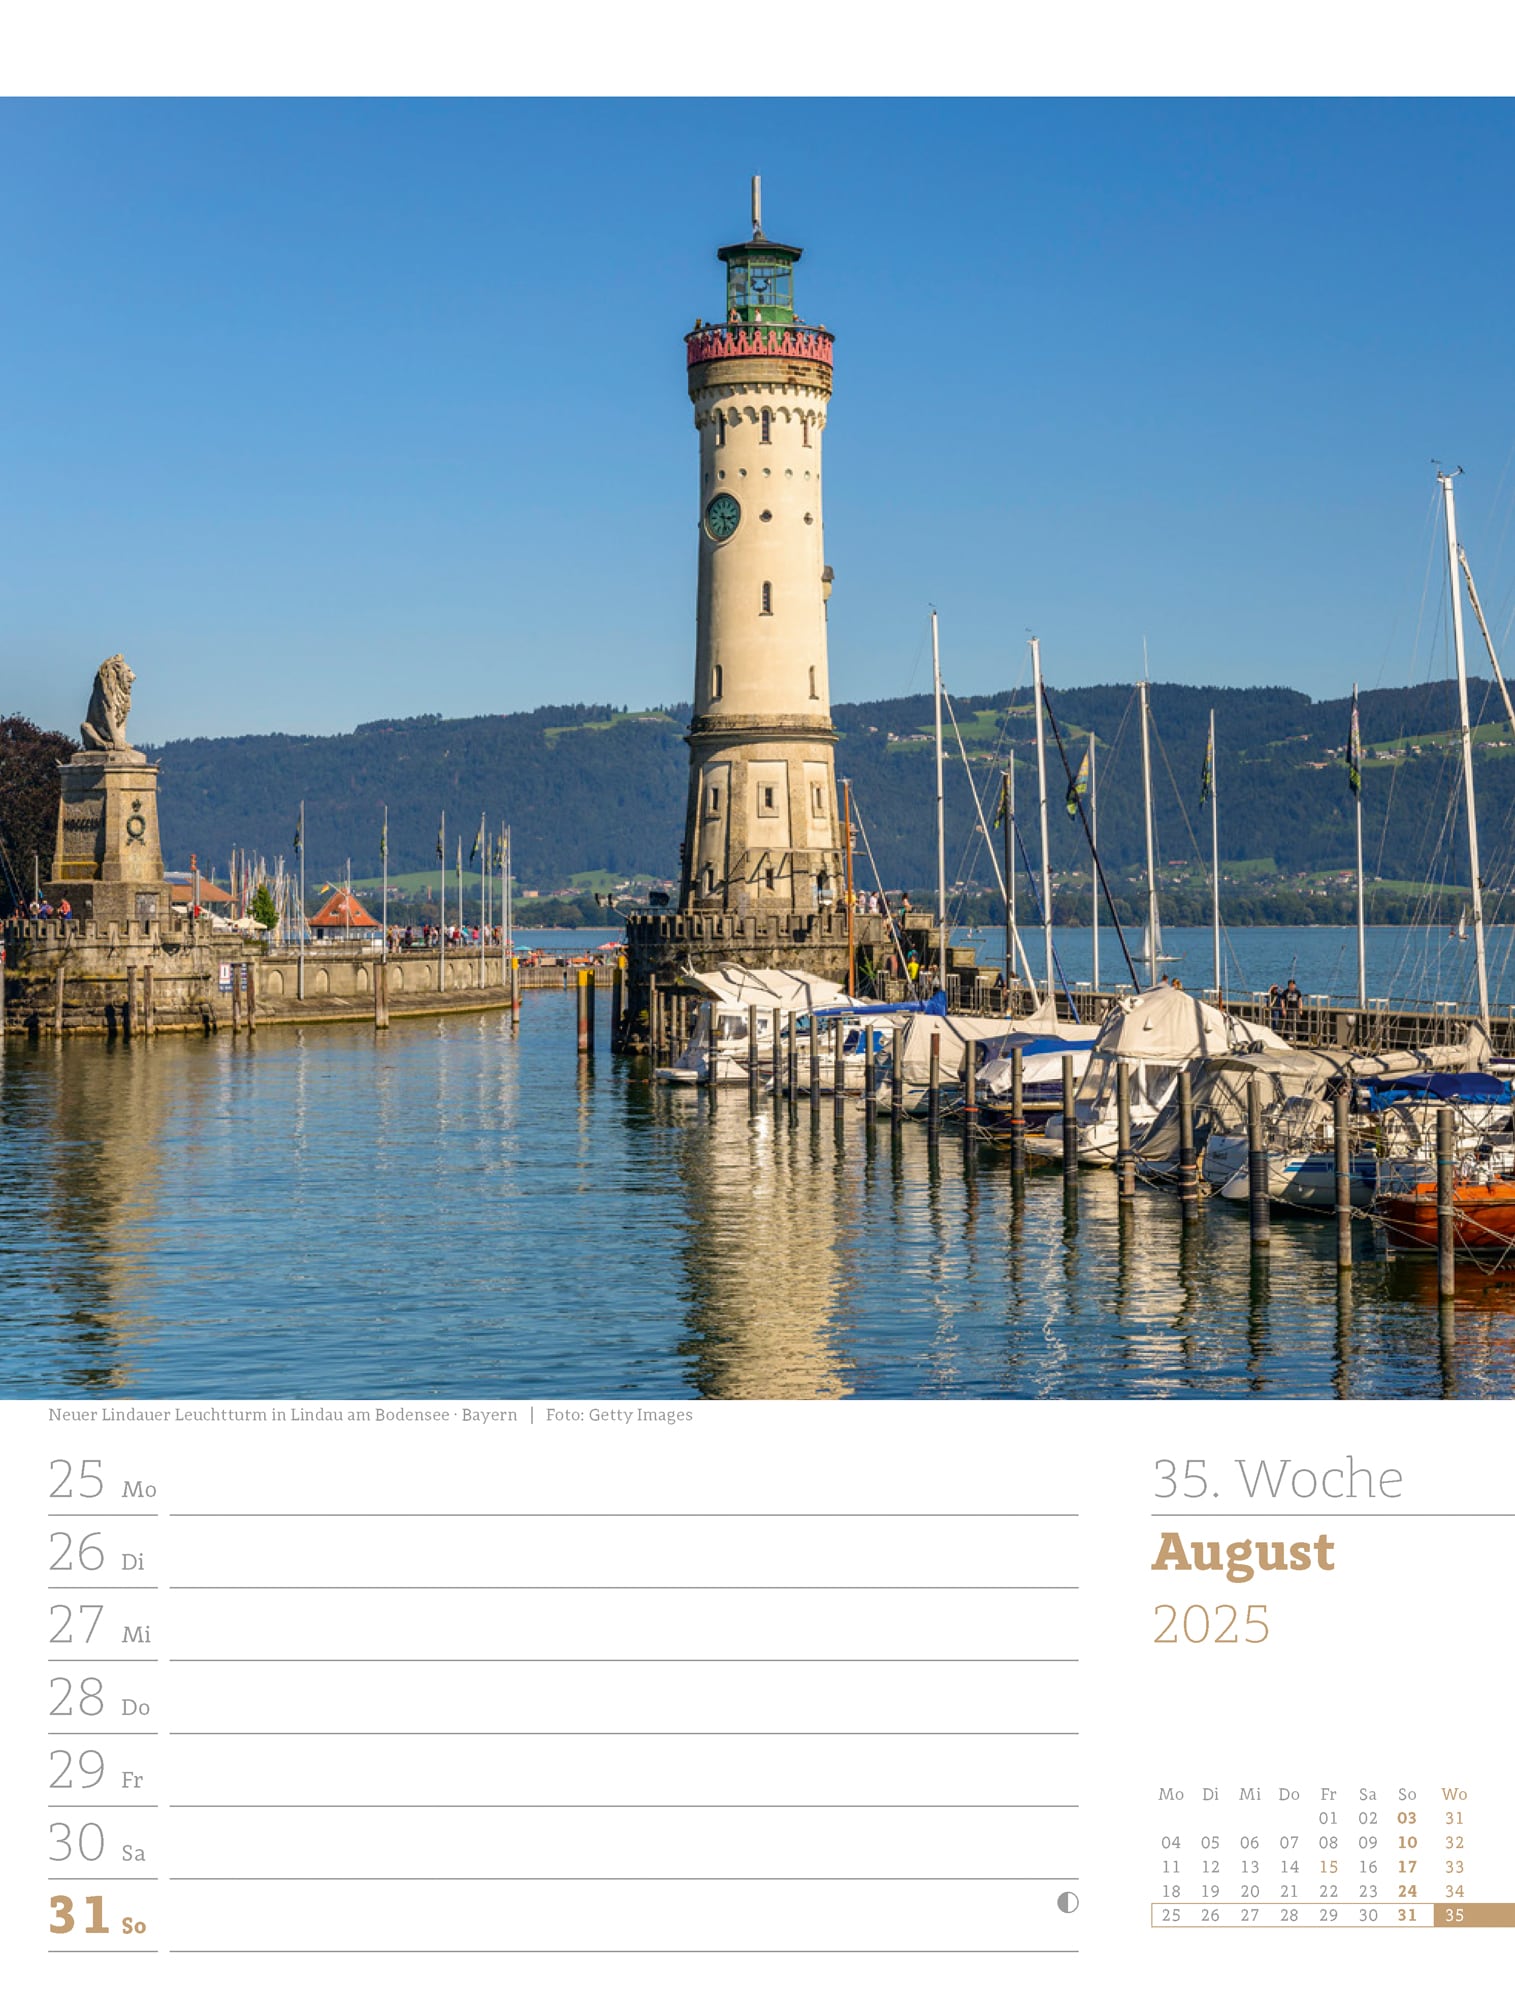 Ackermann Calendar Germany 2025 - Weekly Planner - Inside View 38